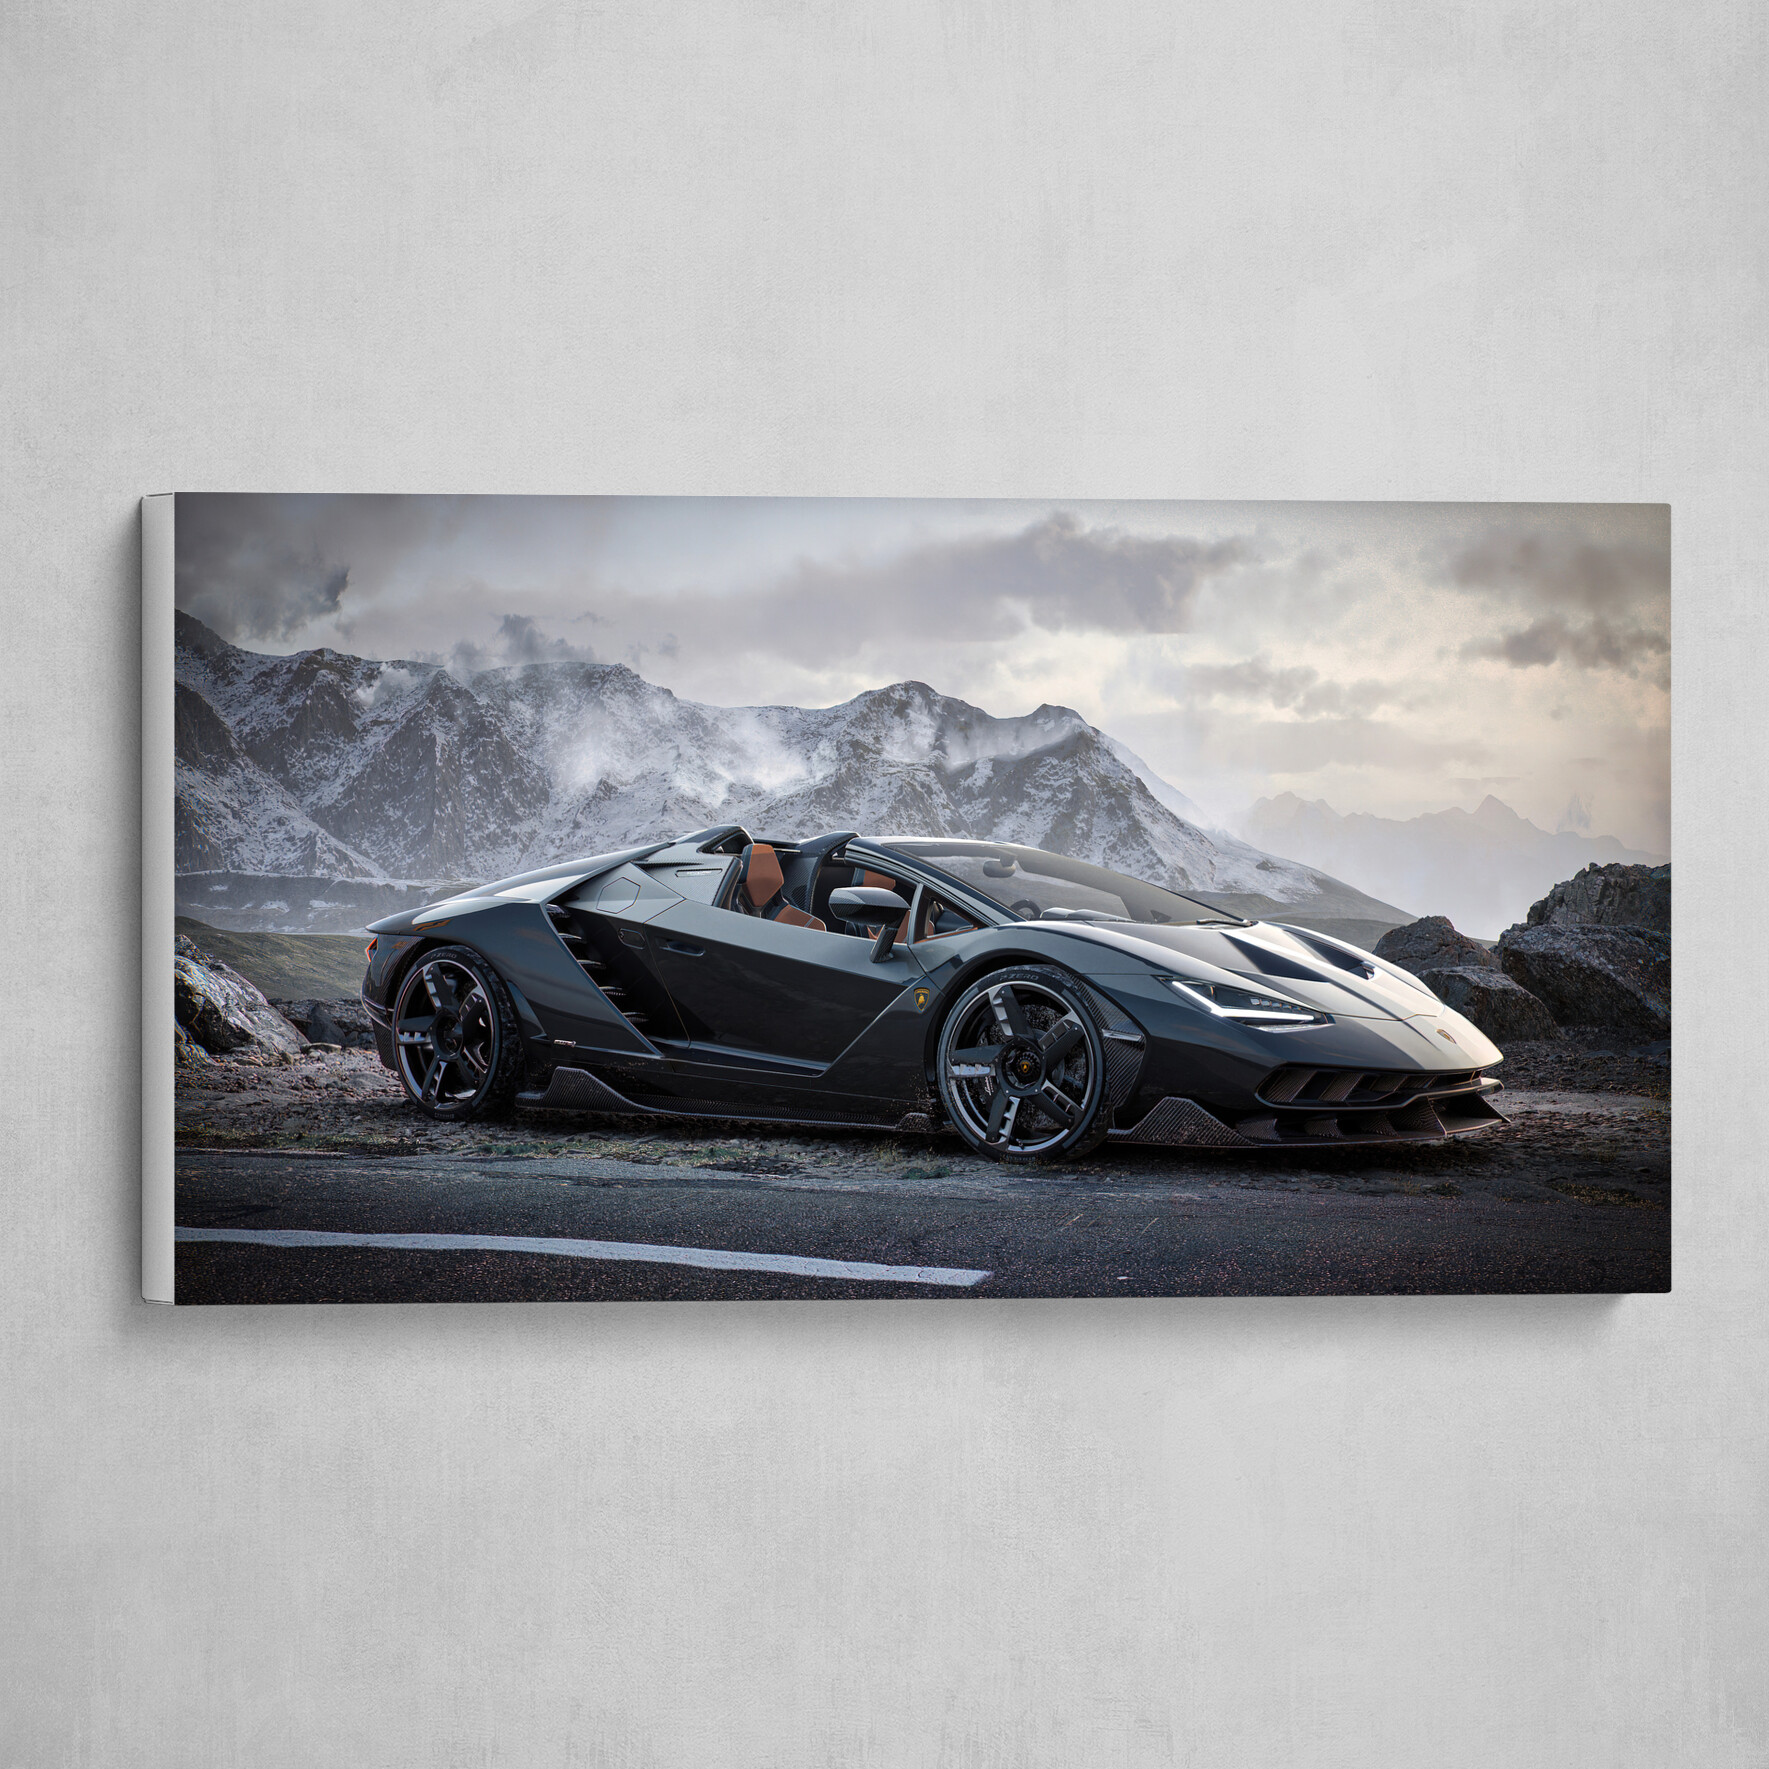 Lamborghini Centenario - Render achieved with Unreal Engine